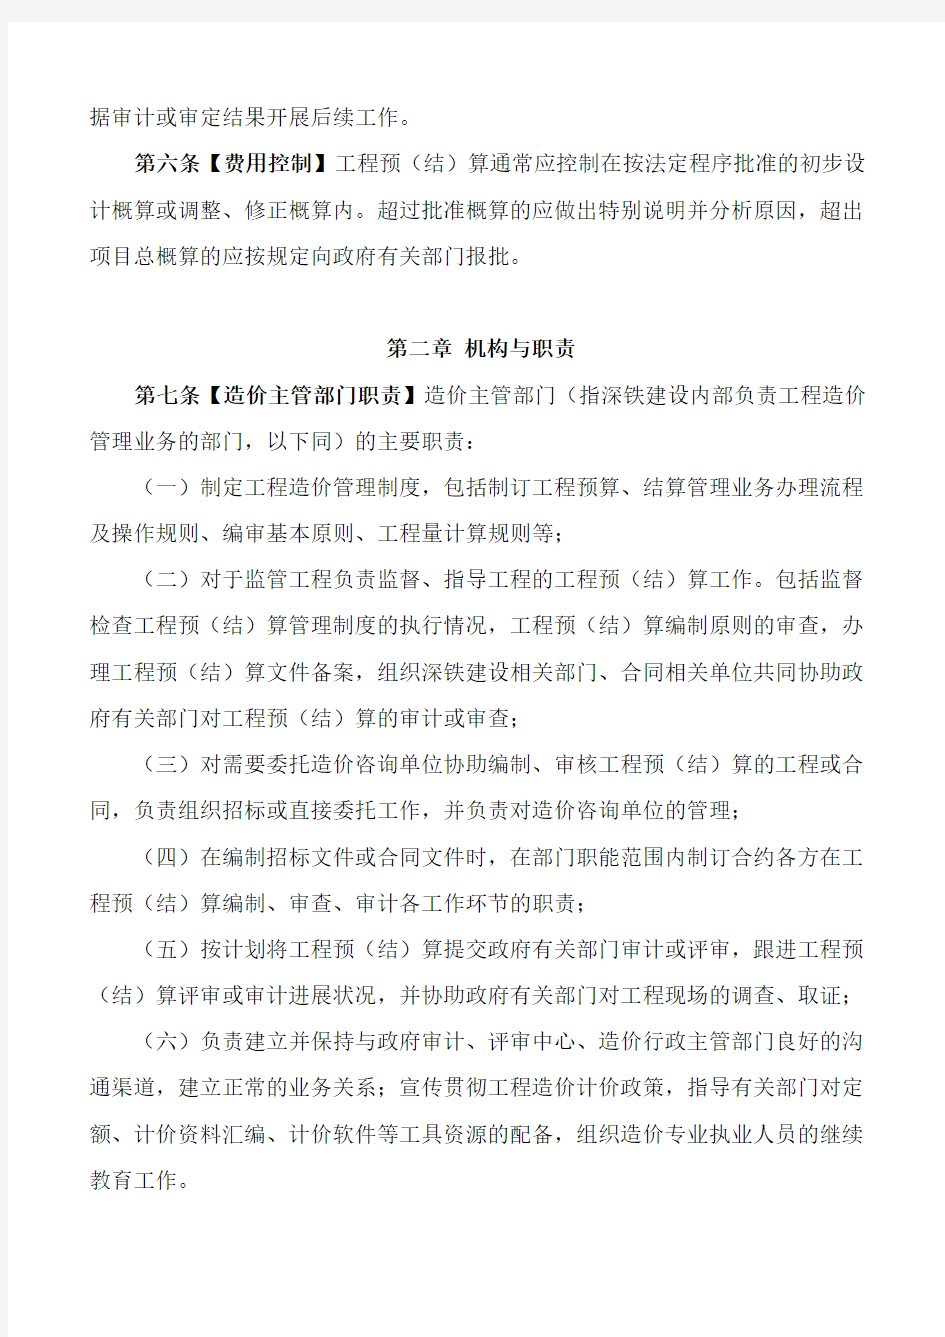 深圳地铁建设集团有限公司工程预(结)算管理办法201907